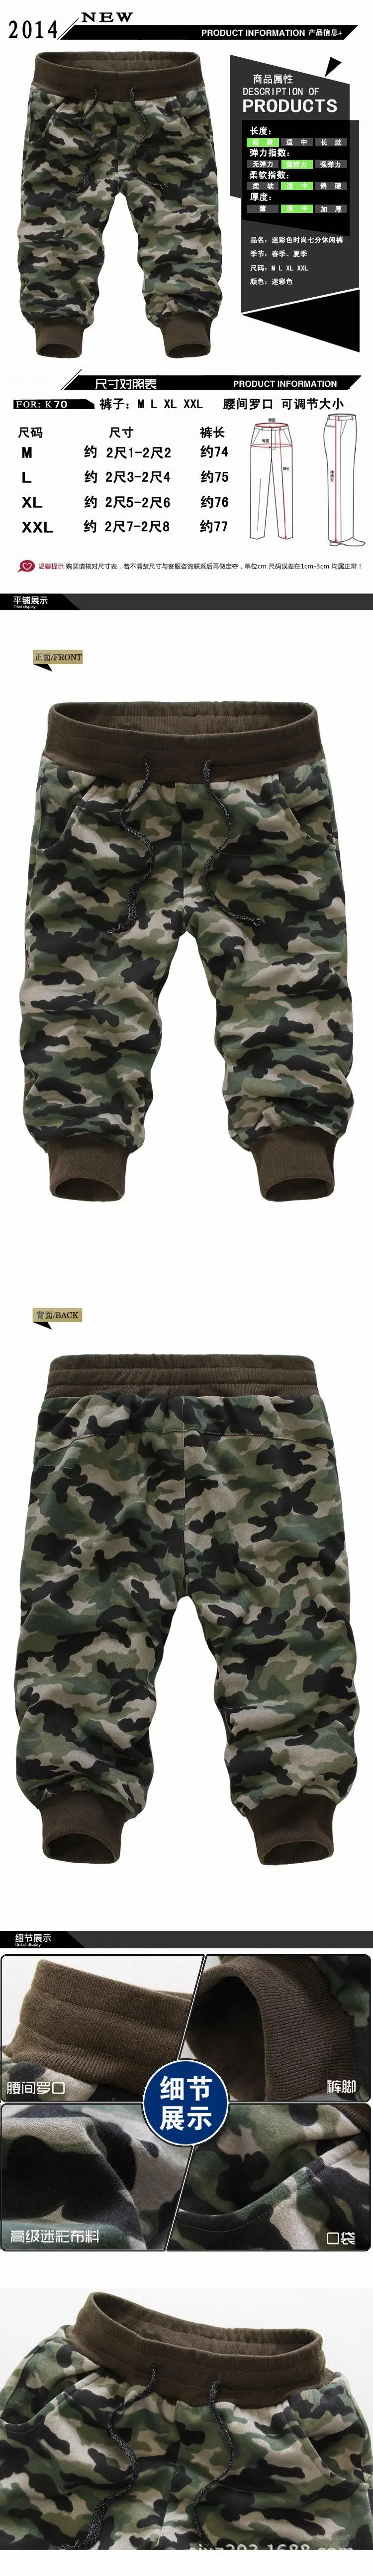 Новинка мода армии Военная Униформа камуфляж Шорты для женщин Для мужчин Slim Fit Для мужчин Рубашки домашние, Большие размеры M-4XL